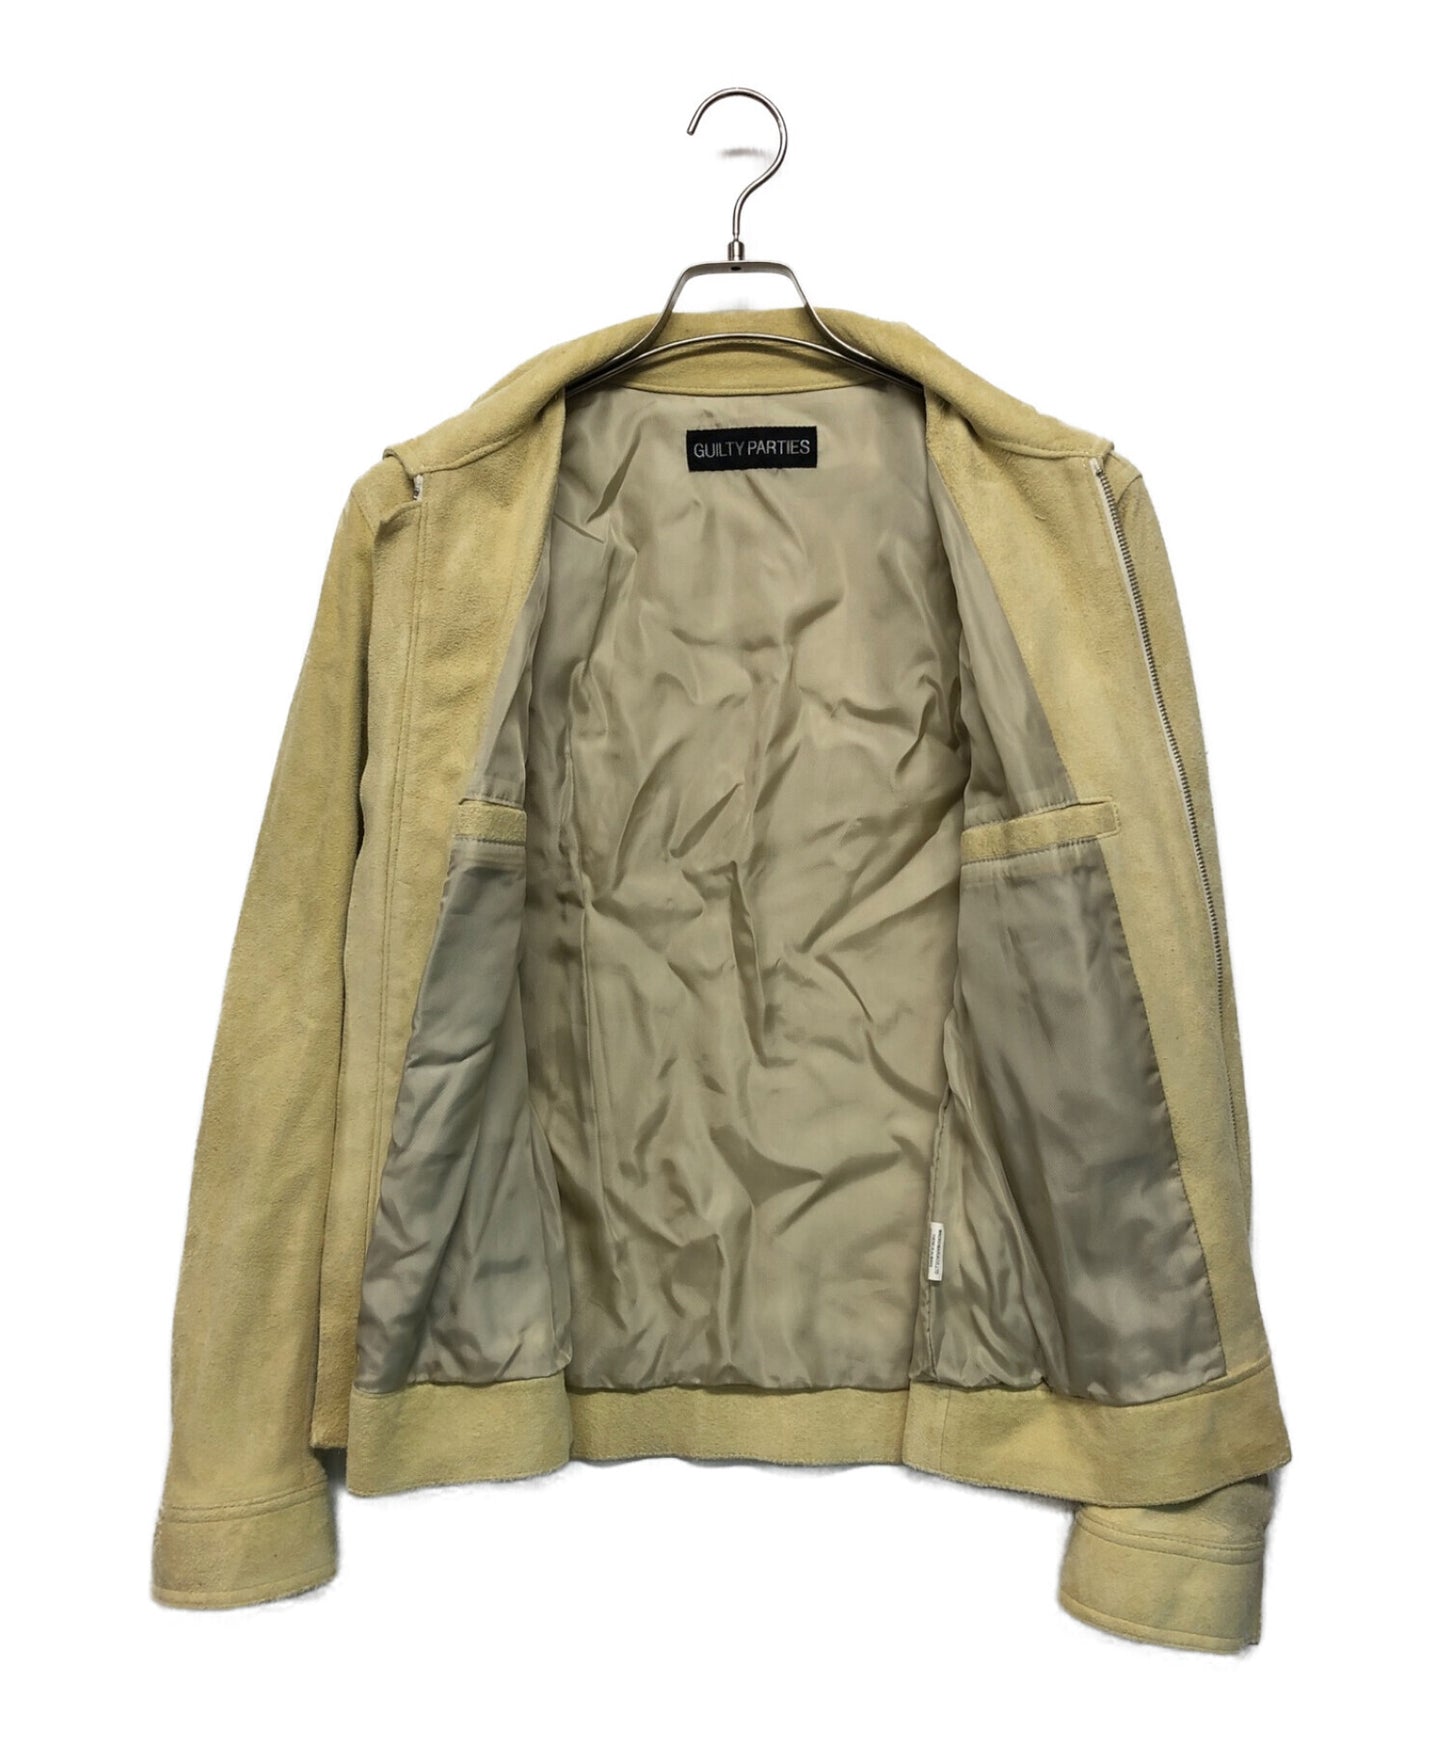 [Pre-owned] WACKO MARIA Deerskin suede jacket / zip-up / outerwear / stainless steel collar